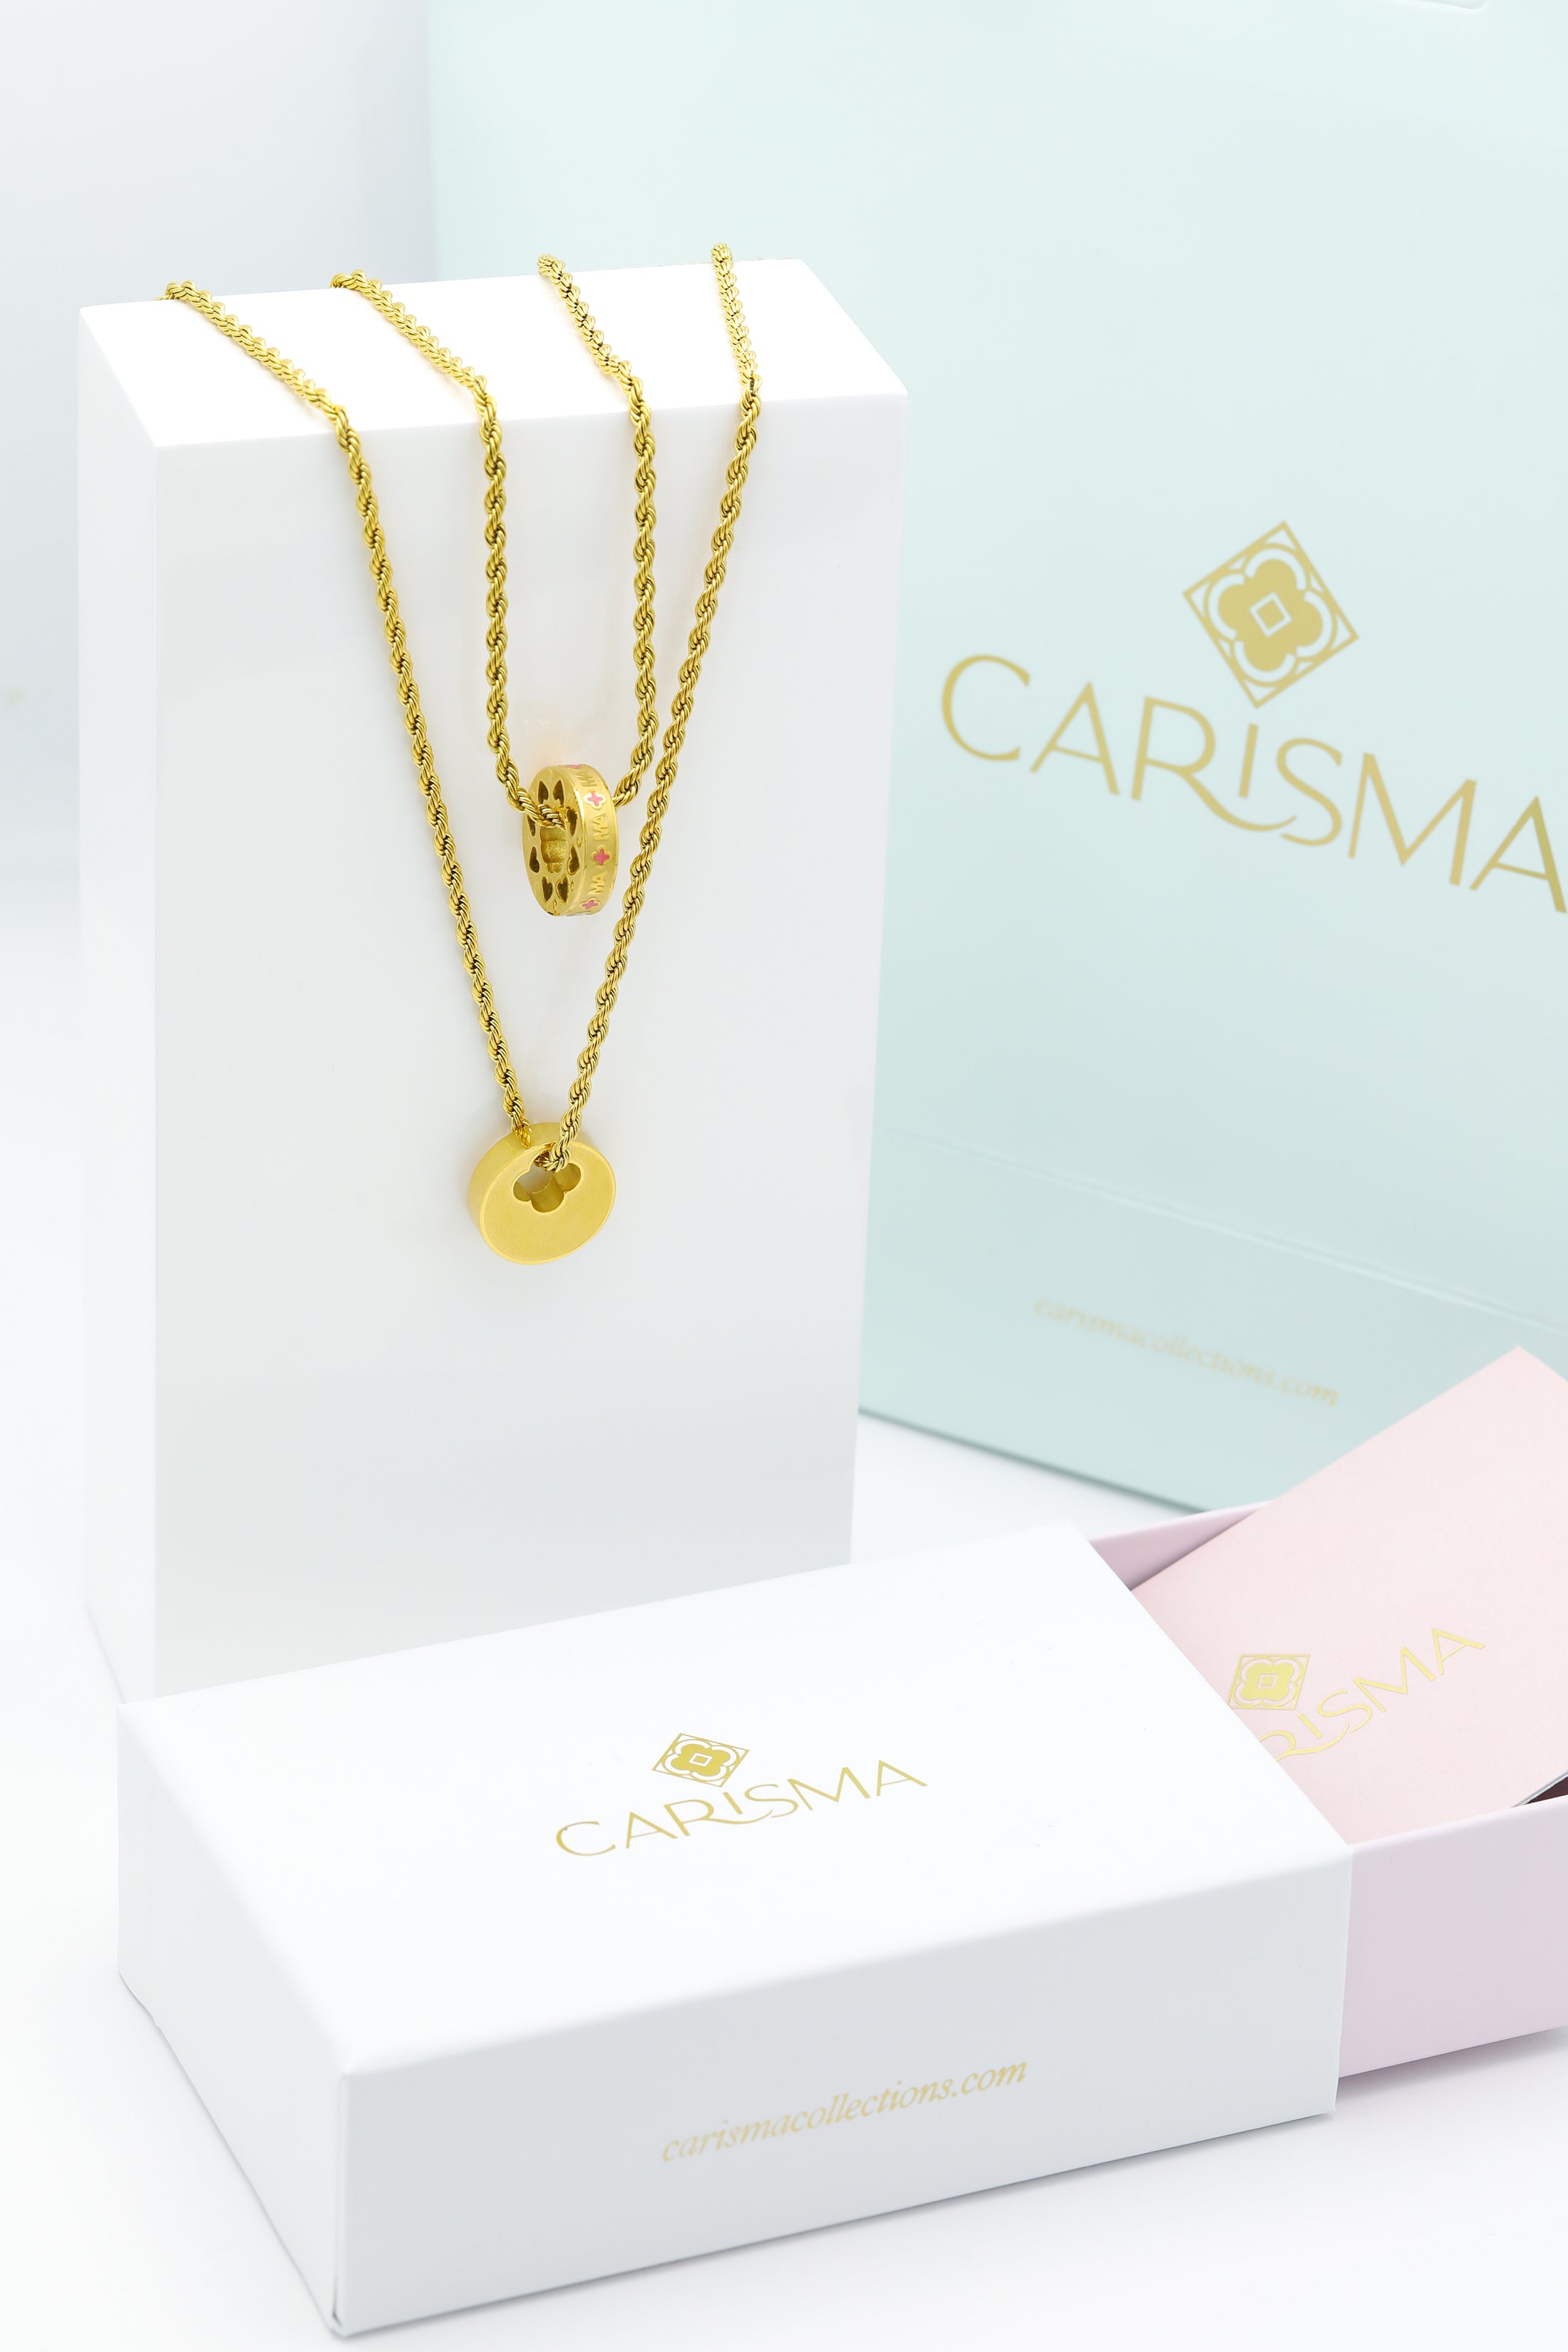 Qalbi Ma Ring Pendant &amp; Carisma Circle Engravable Ring Pendant Gift Set